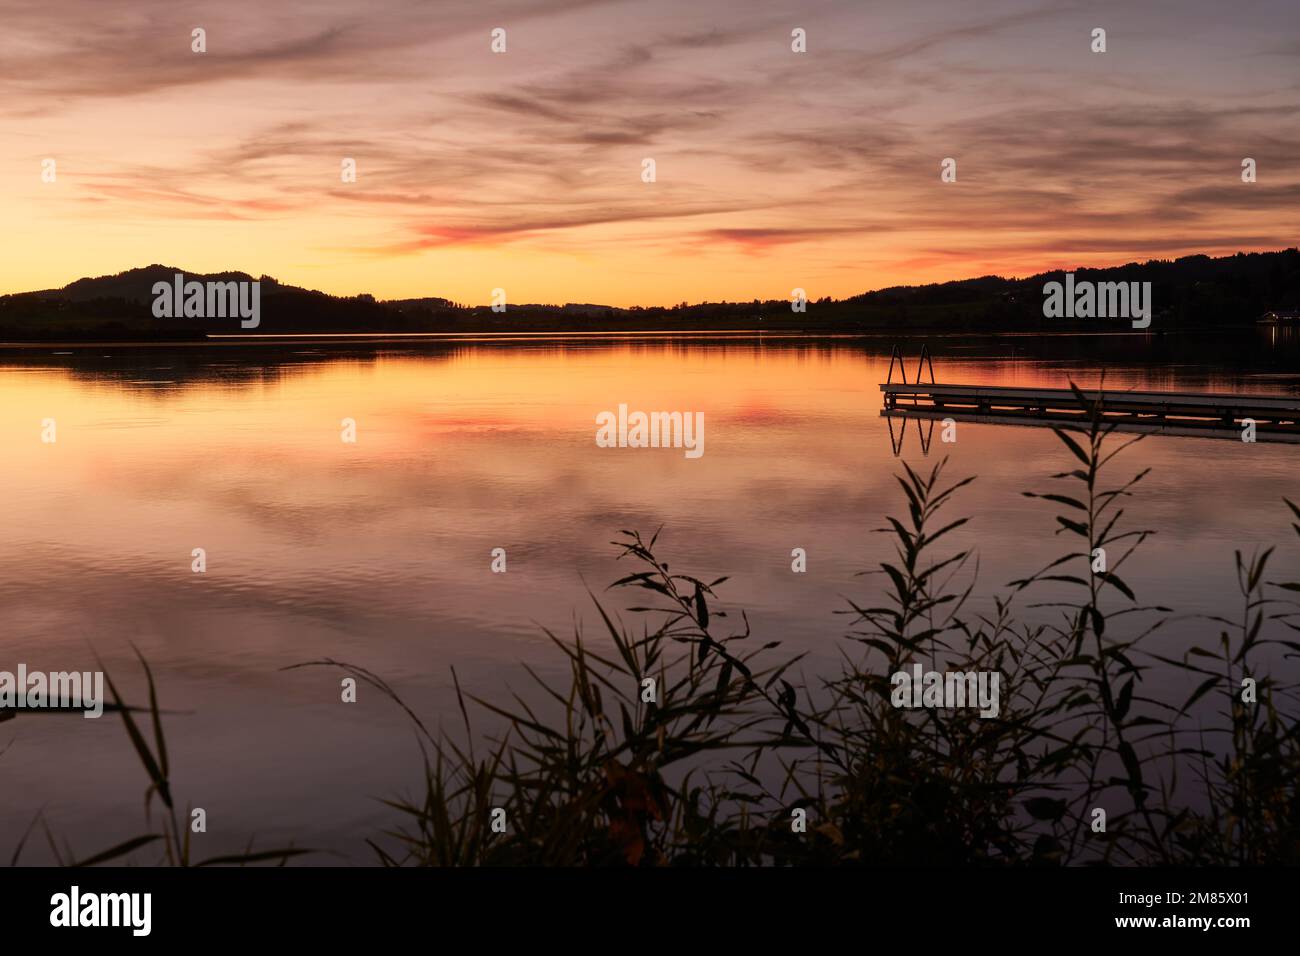 Wundervolle Abendstimmung am Hopfensee mit Steg und orangeroter Wollenspiegelung im See Foto Stock